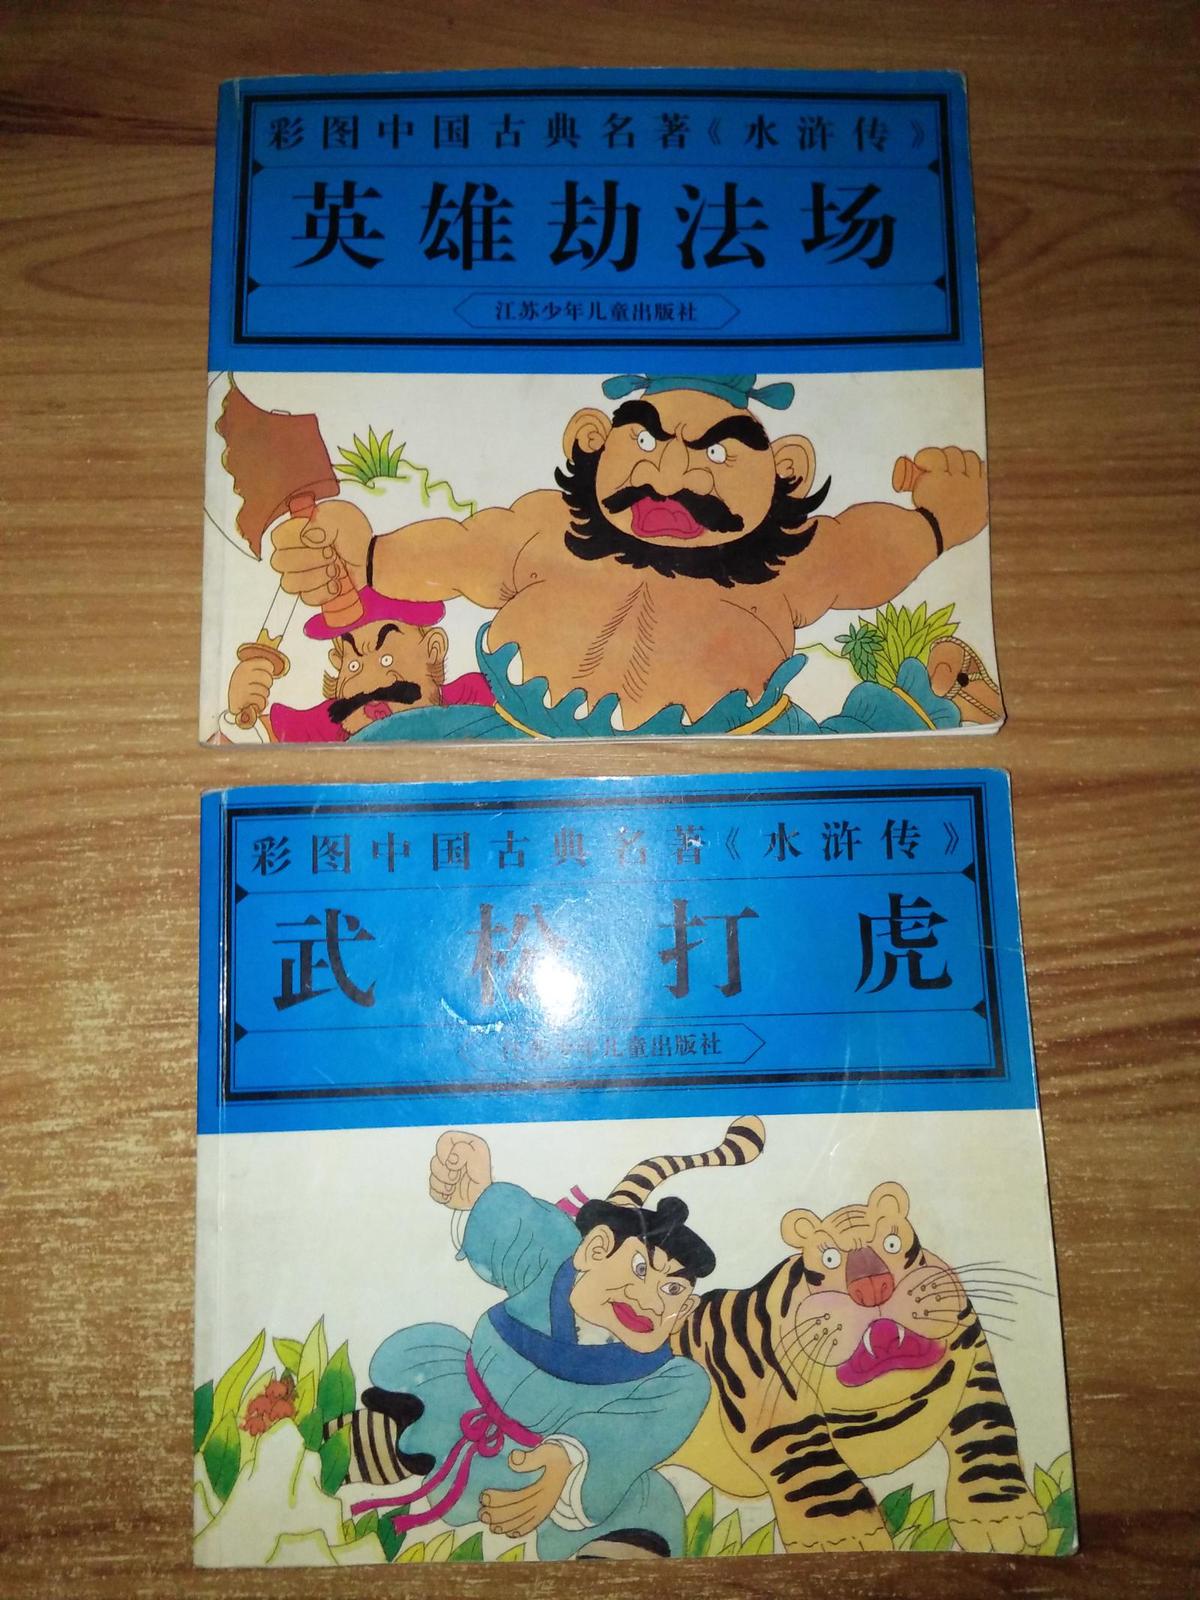 彩图中国古典名著《水浒传》---武松打虎、英雄劫法场